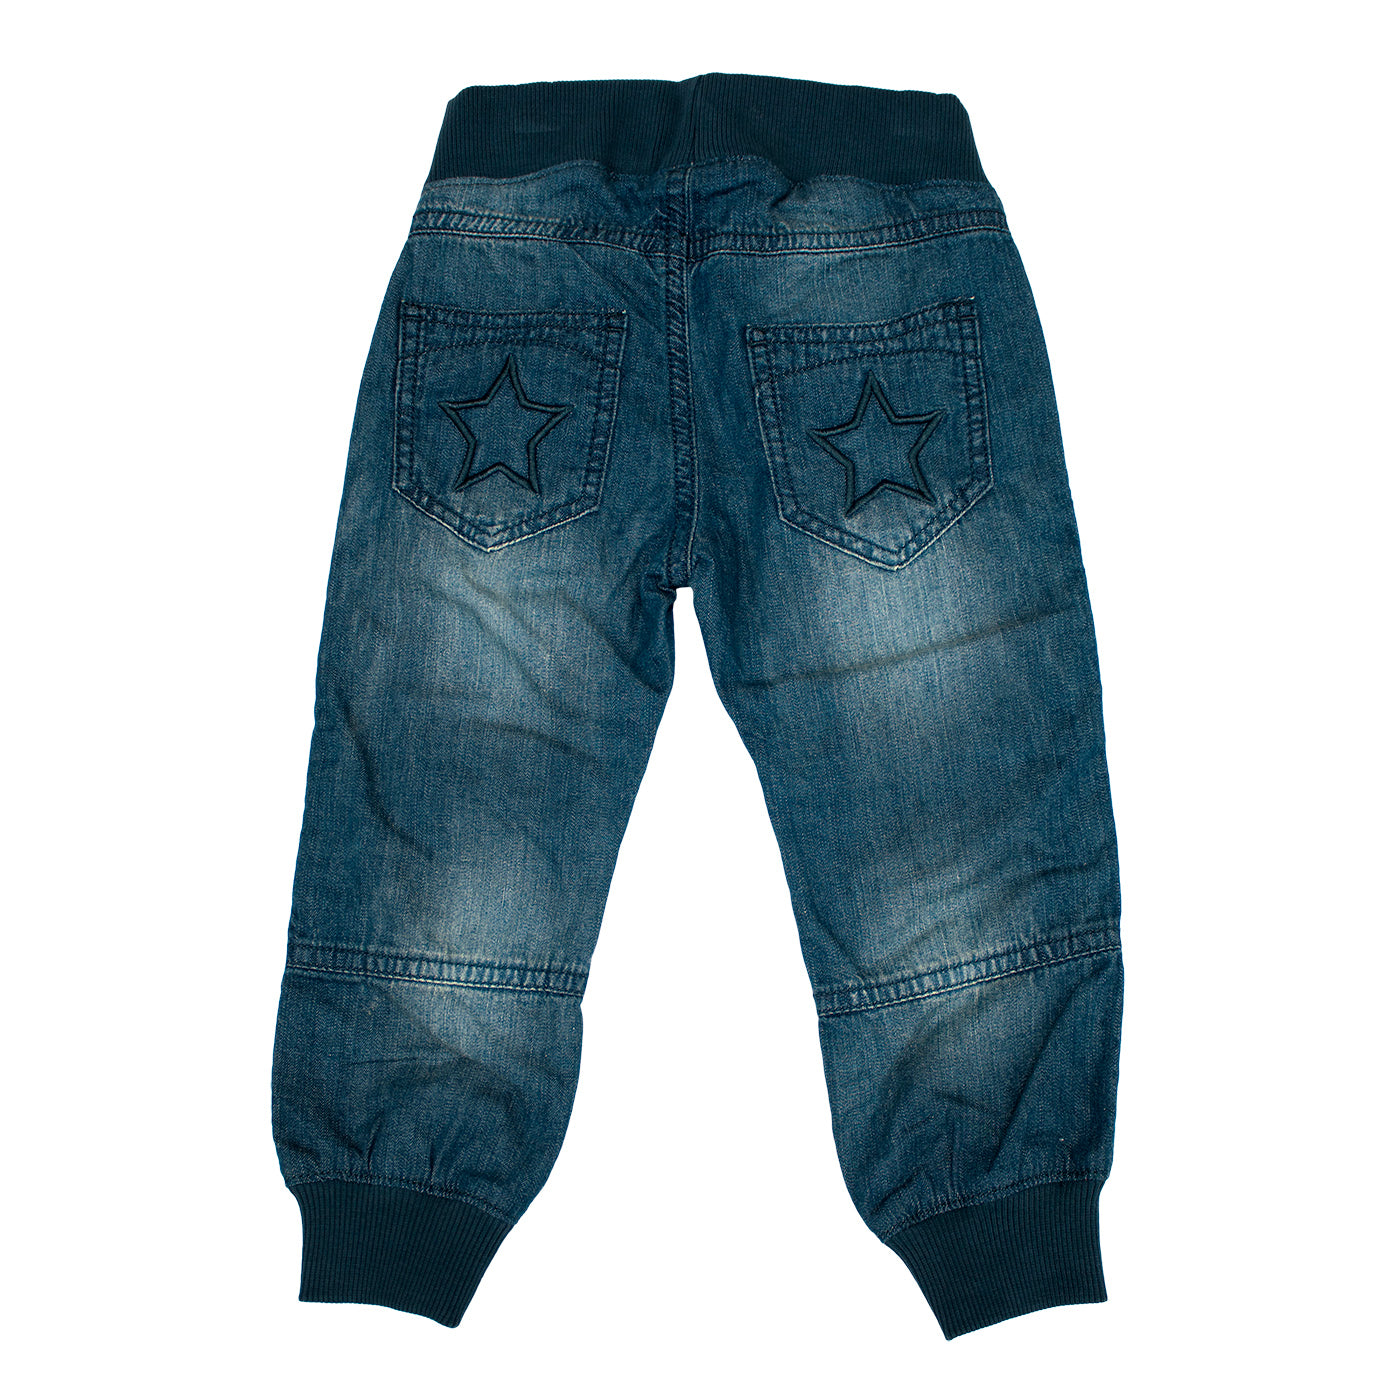 Villervalla - Relaxed Jeans - Soft Denim - Indigo Wash